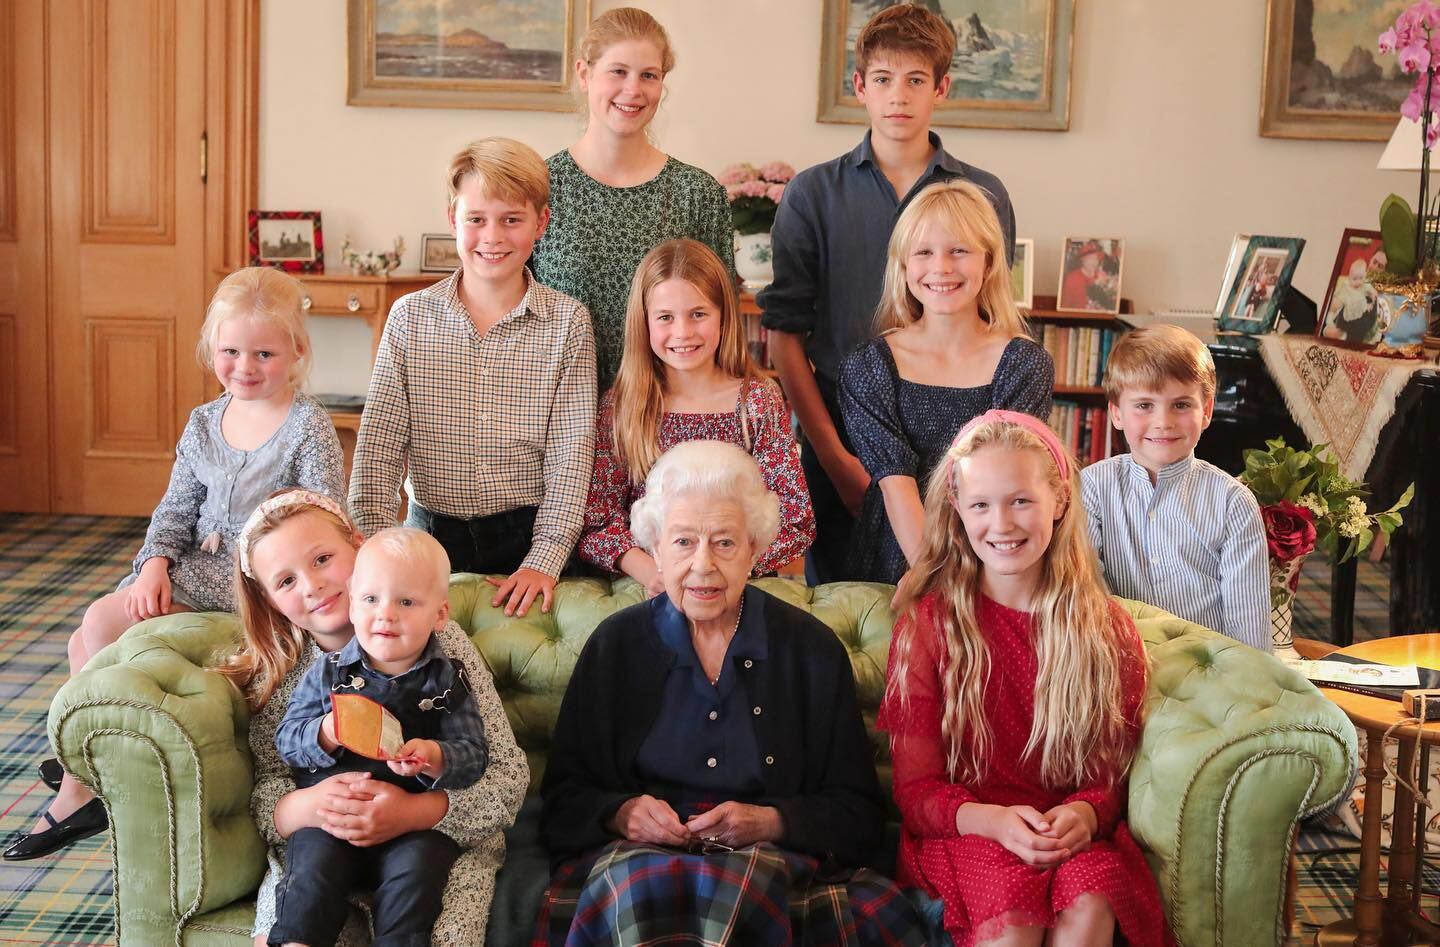 La reina Isabel II junto a sus nietos menores en una imagen compartida en las redes socailes de Kensington Palace. (instagram.com/princeandprincessofwales)